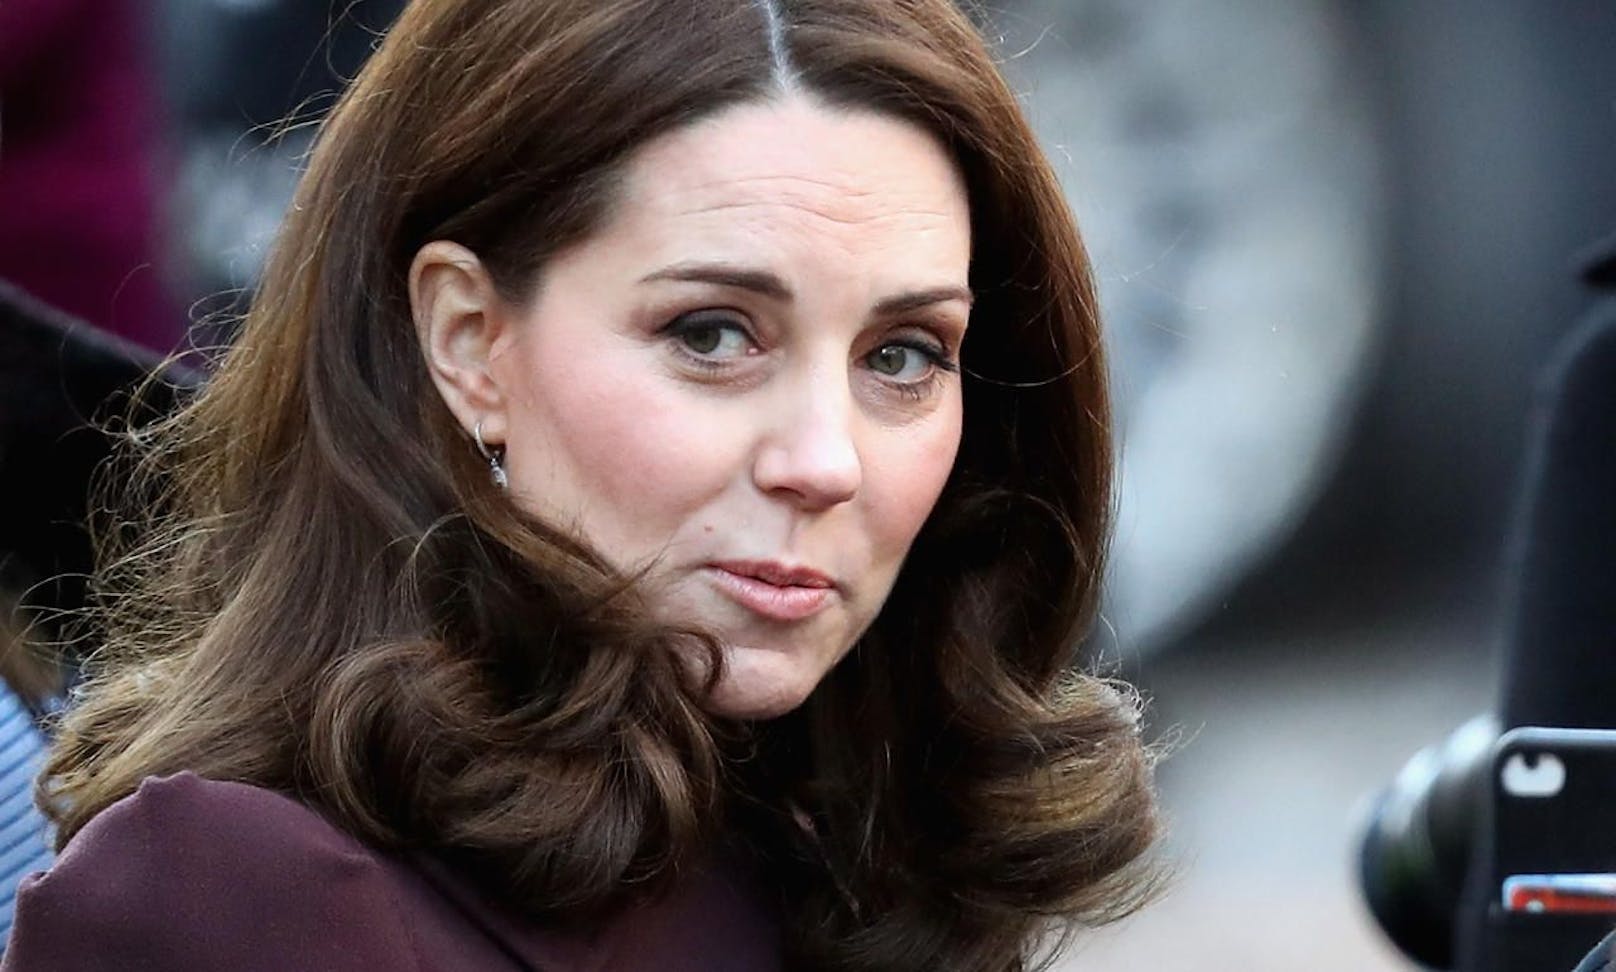 Herzogin Kate setzt bei ihren Lippen stets auf einen natürlichen Rosaton.